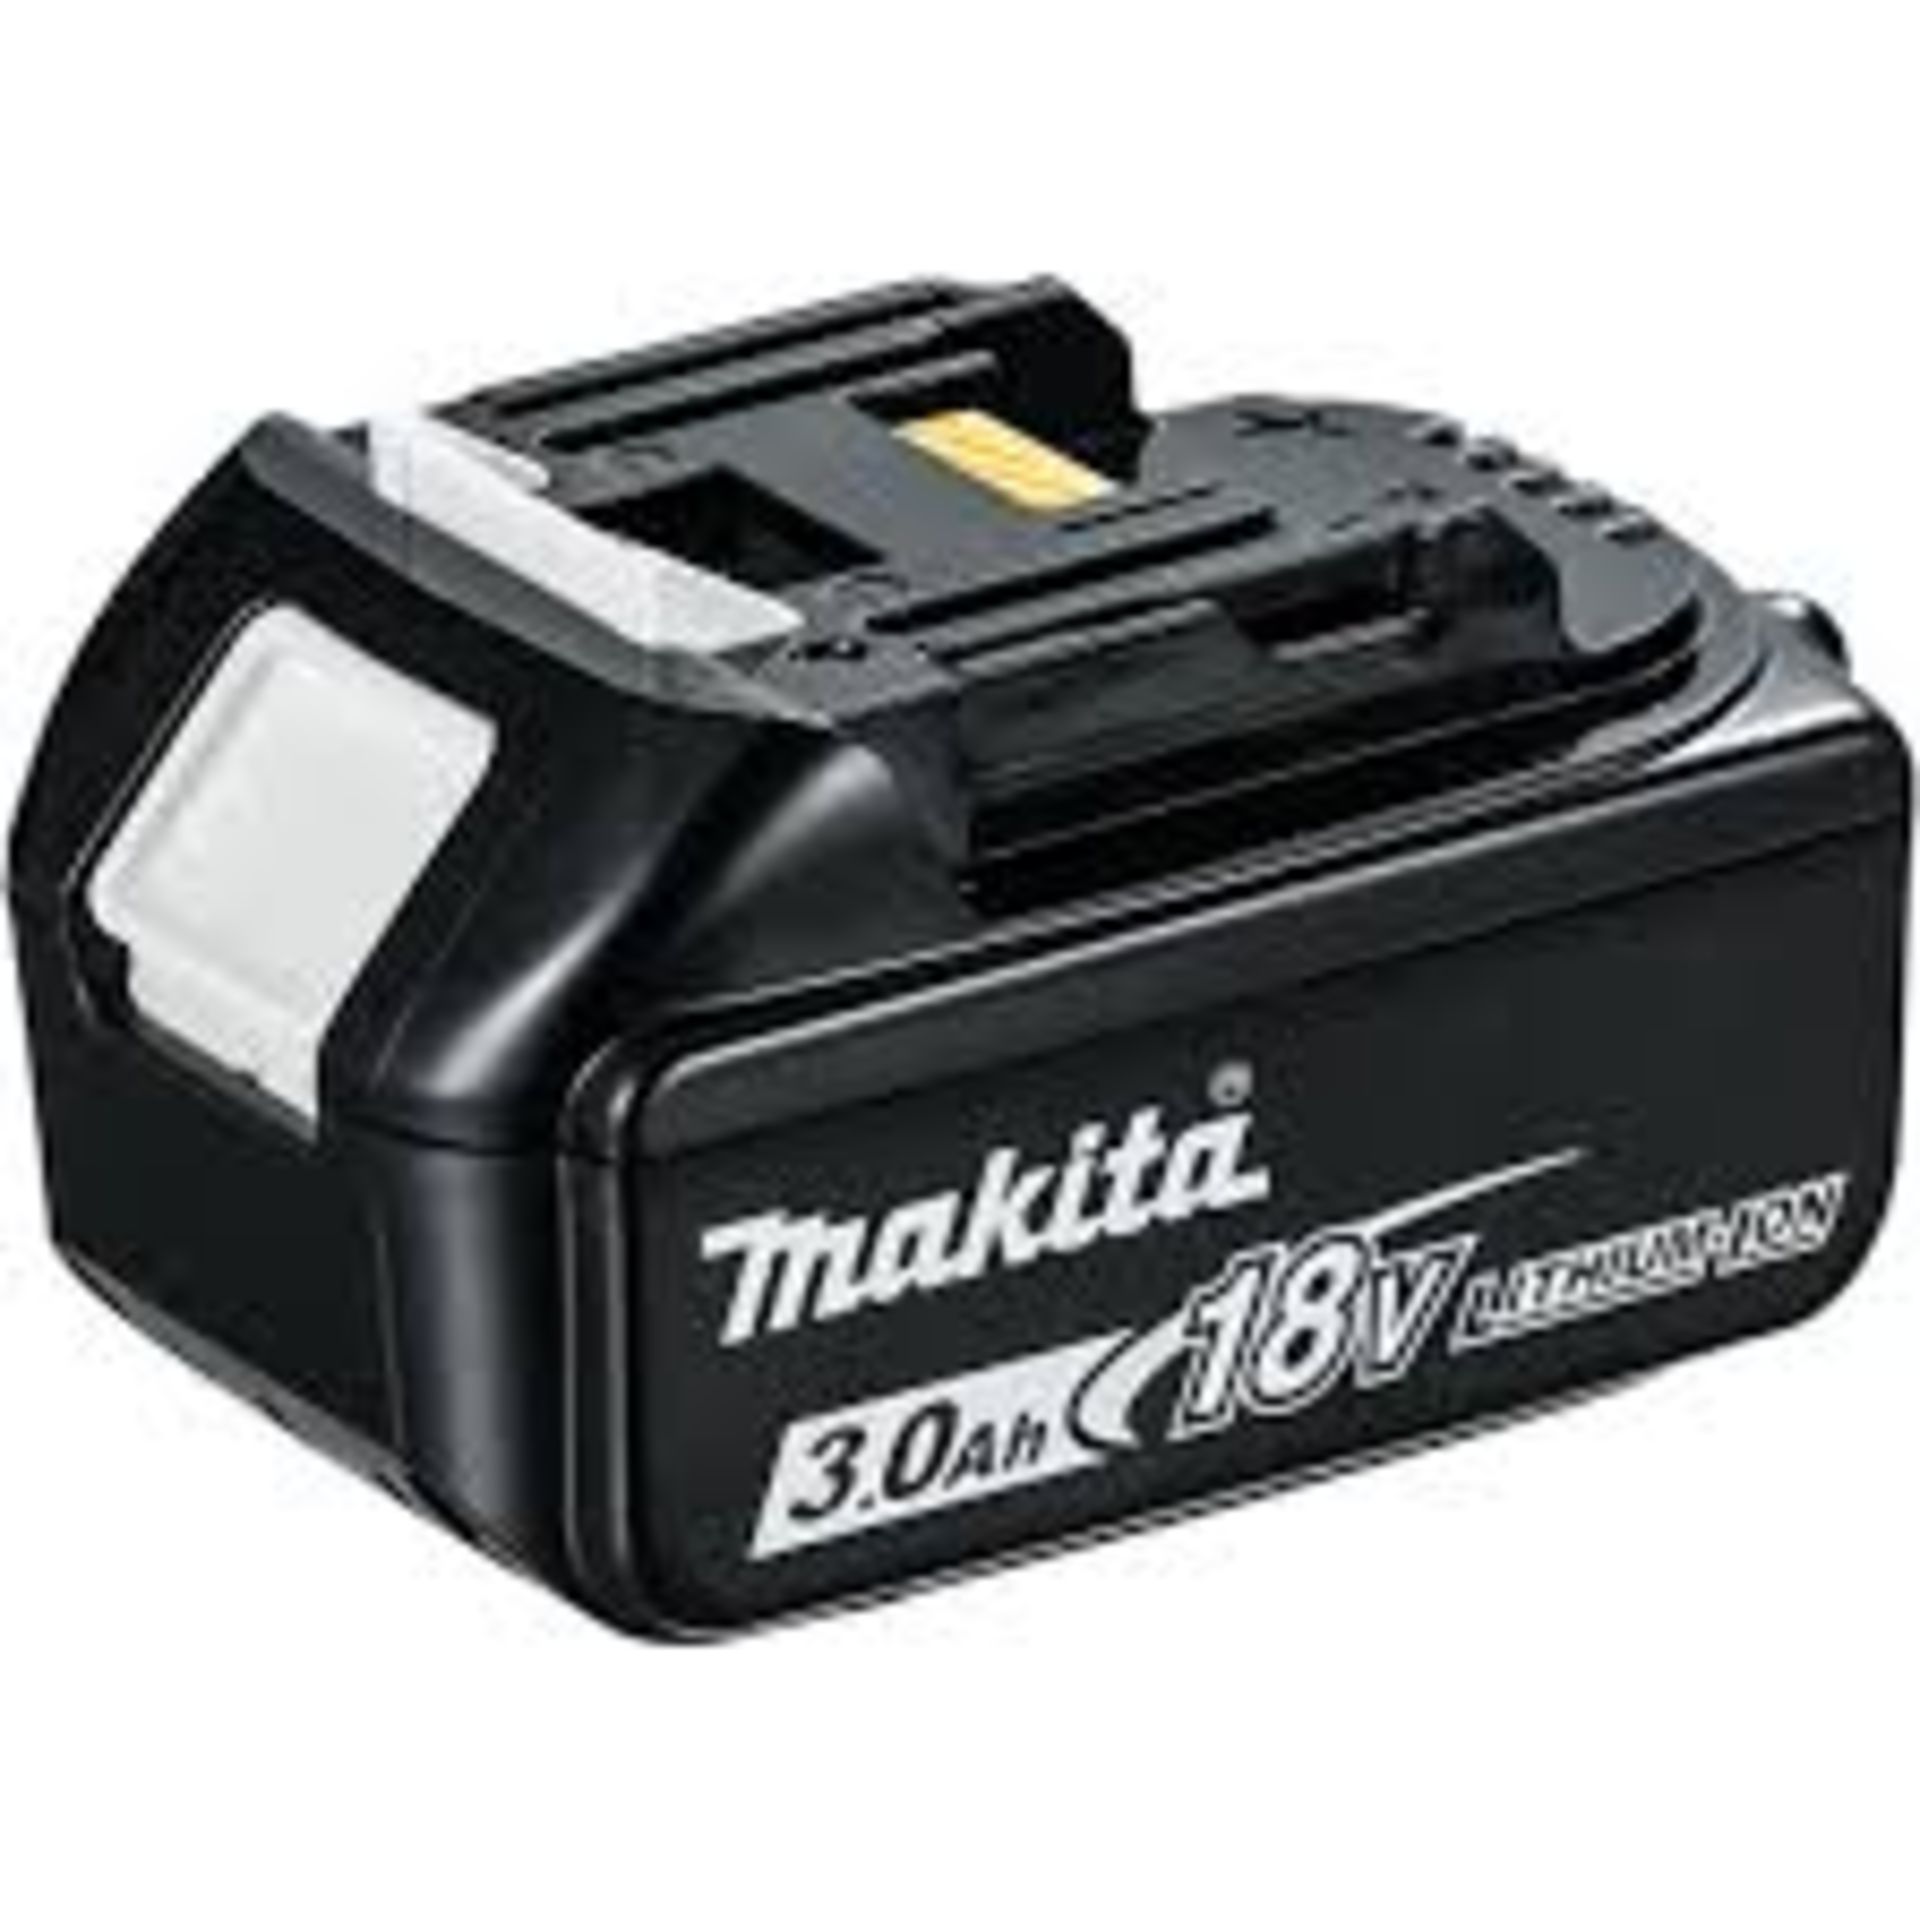 2 X Makita BL1830 18v LXT 3.0Ah Li-Ion Battery. LOCATION 13A.6